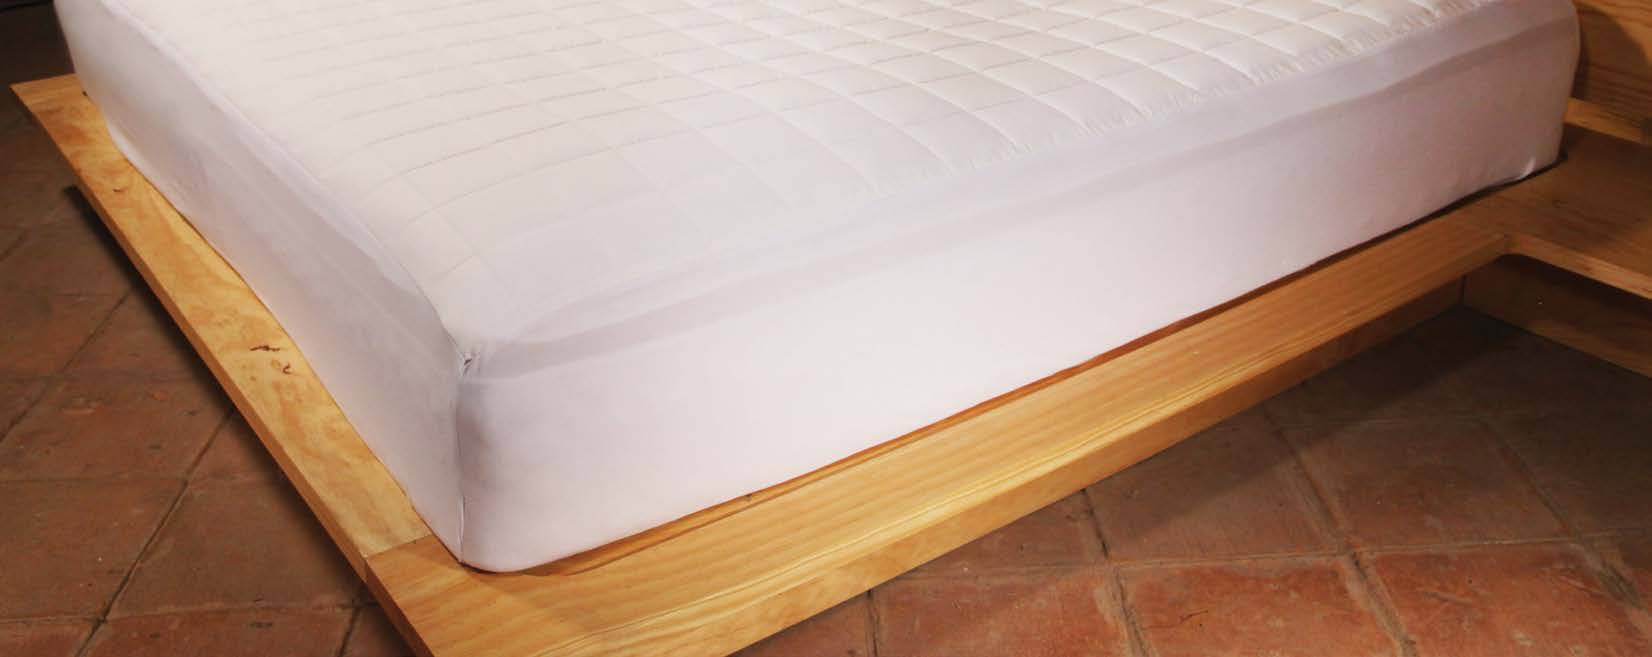 Protector de Colchón Tela expandible Cobertores Cobertor americano estilo hotelero que le Proporcionara la temperatura perfecta con una